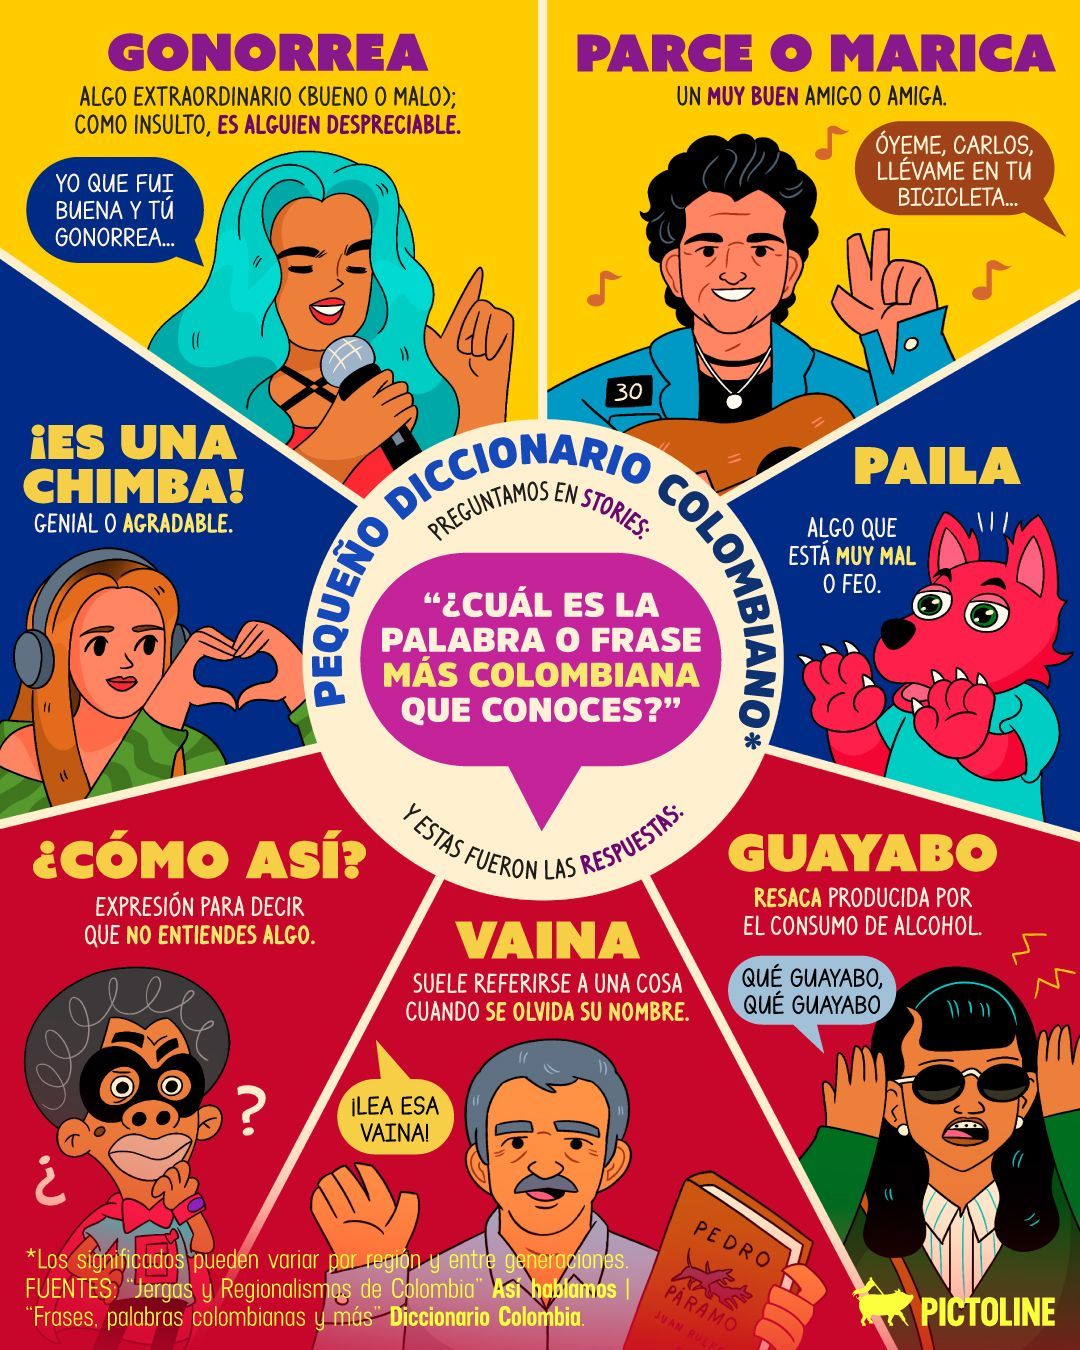 Palabras y frases muy bacanas 😃, cortesía de nuestros amix de #Colombia 💛💙❤️⁣ ⁣ #chimba #parce #latam #palabras